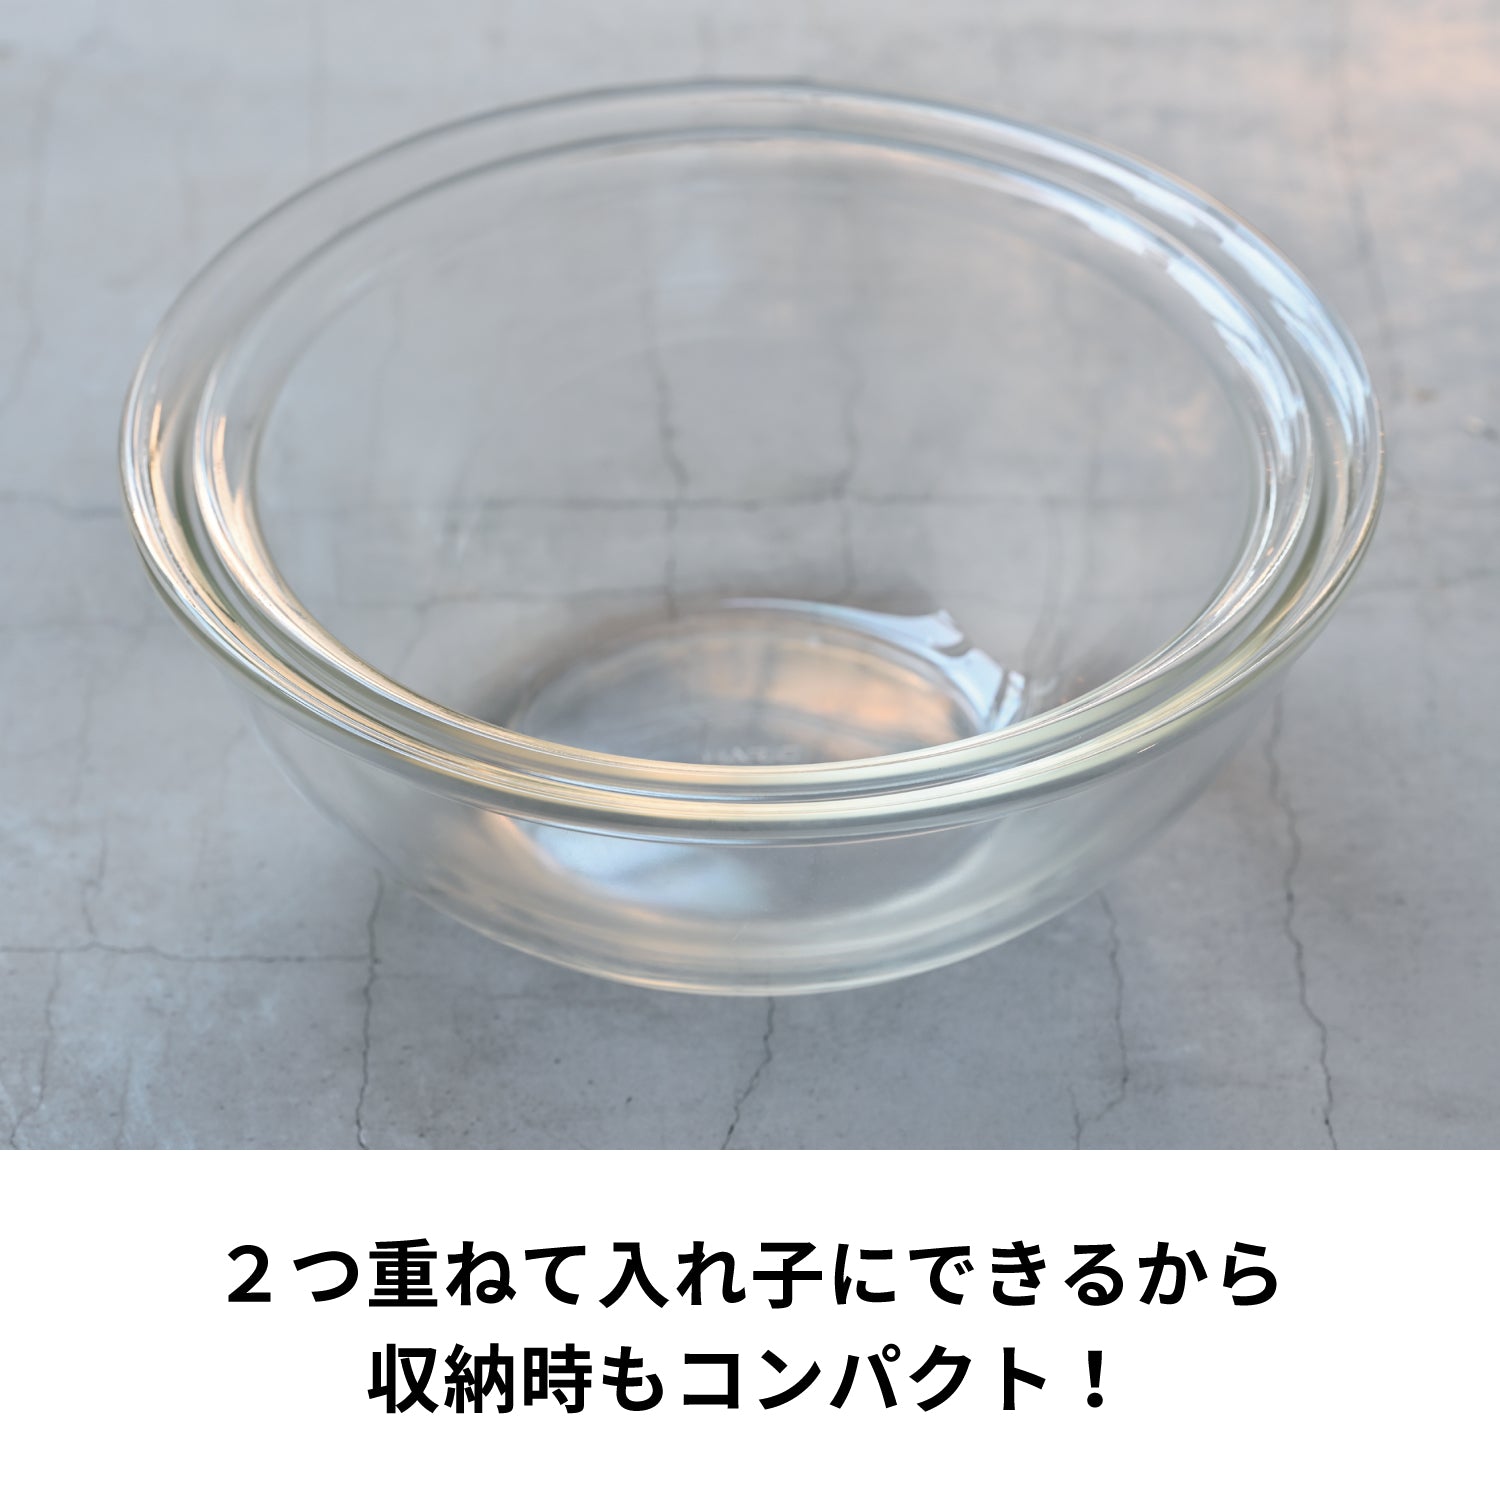 耐熱ガラス製浅型ボウル 2個セット – HARIO NETSHOP